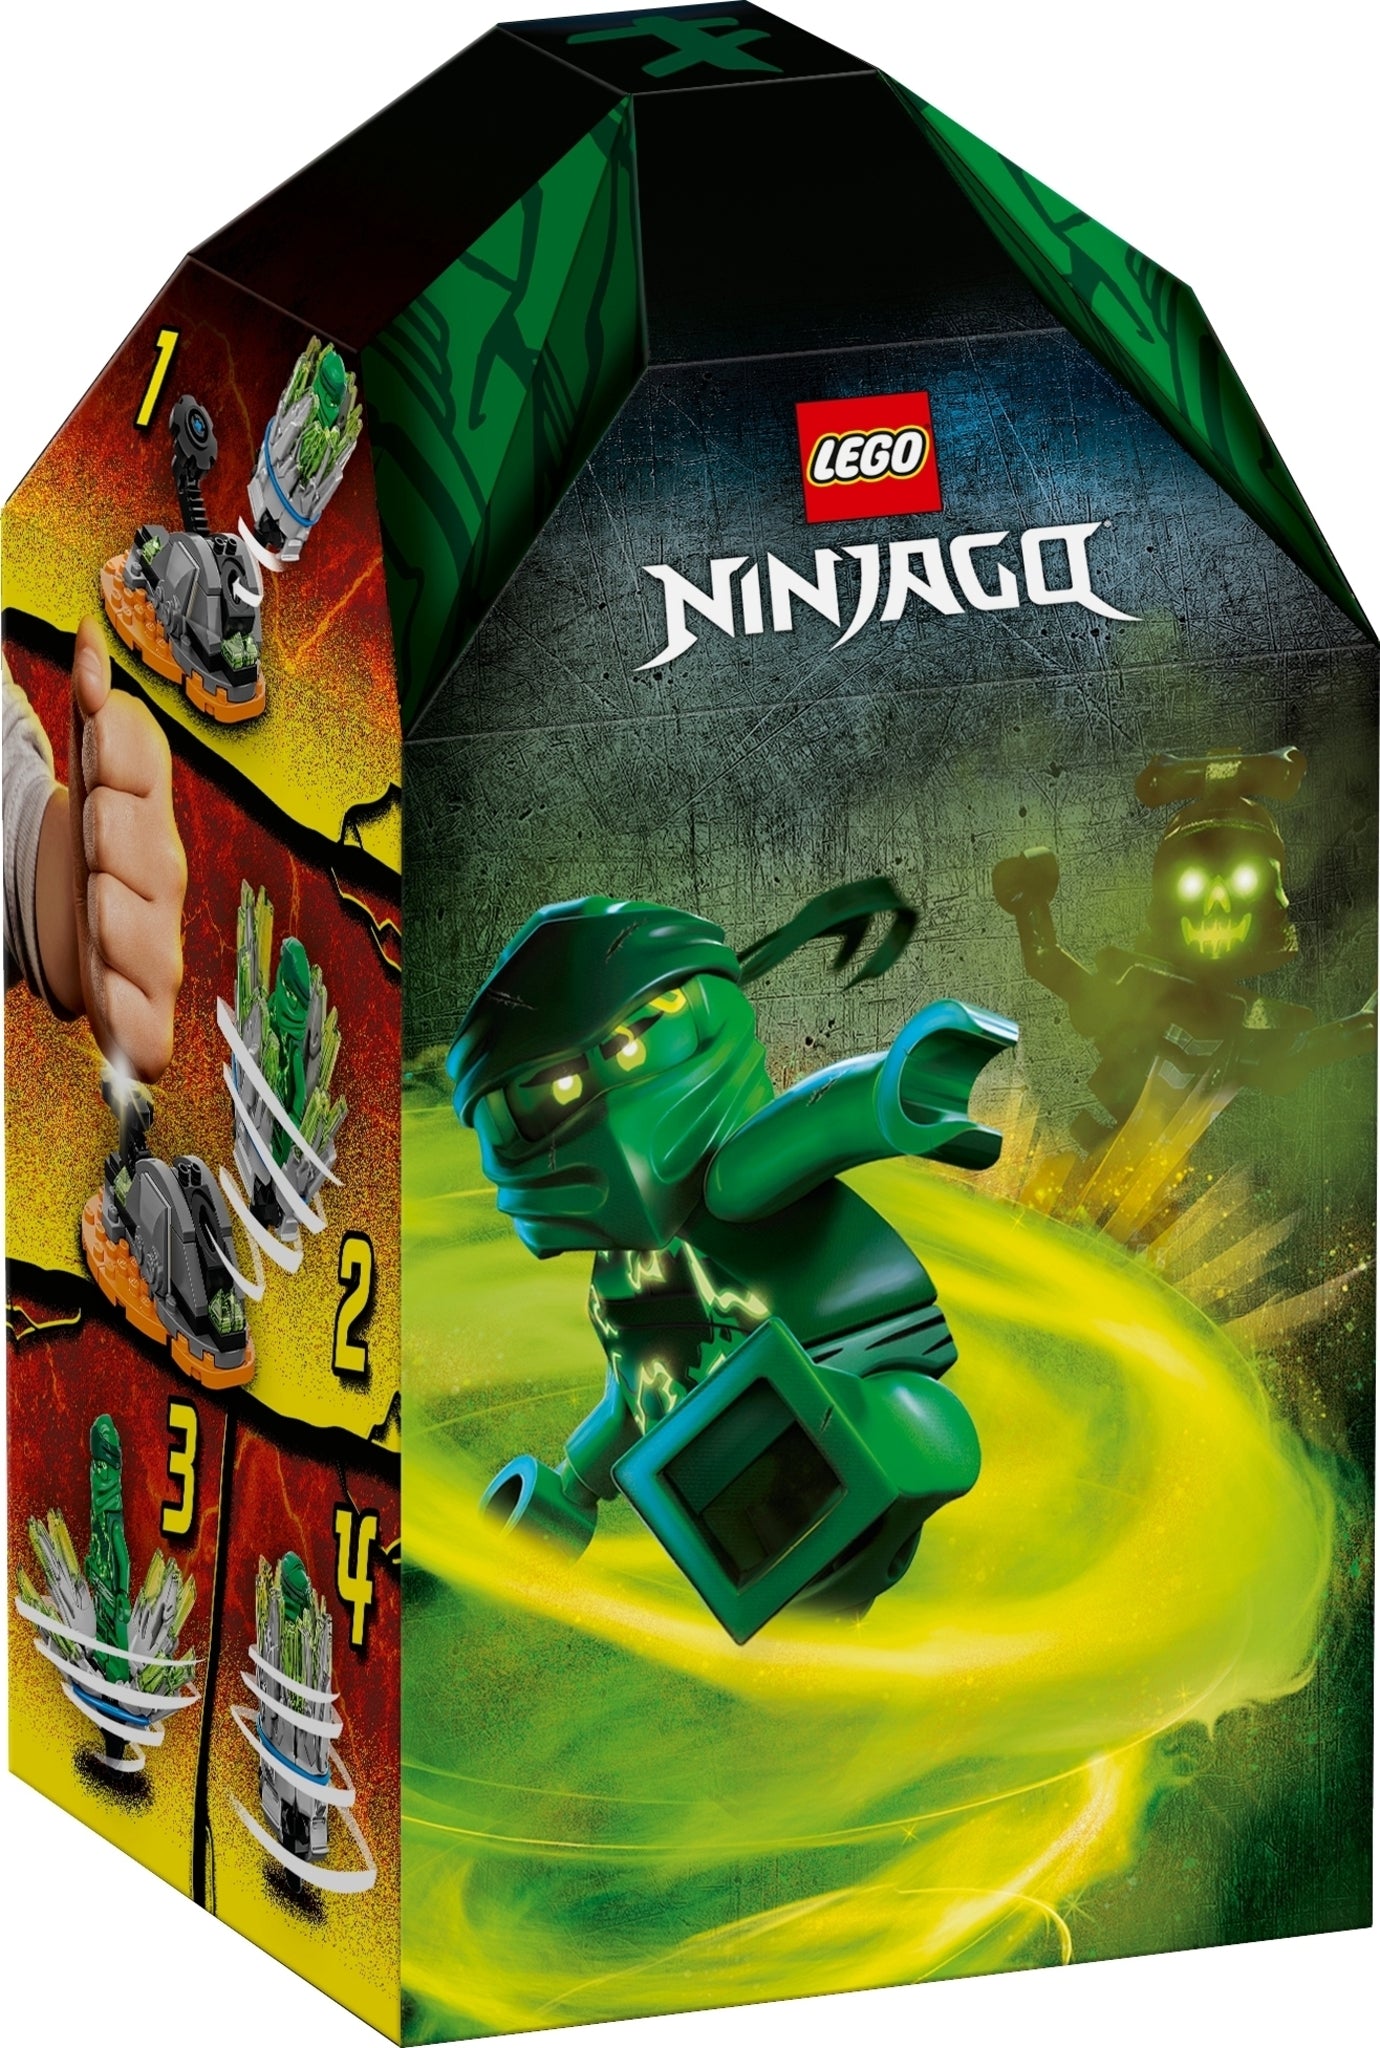 70687 LEGO Ninjago - Spinjitzu Burst Lloyd